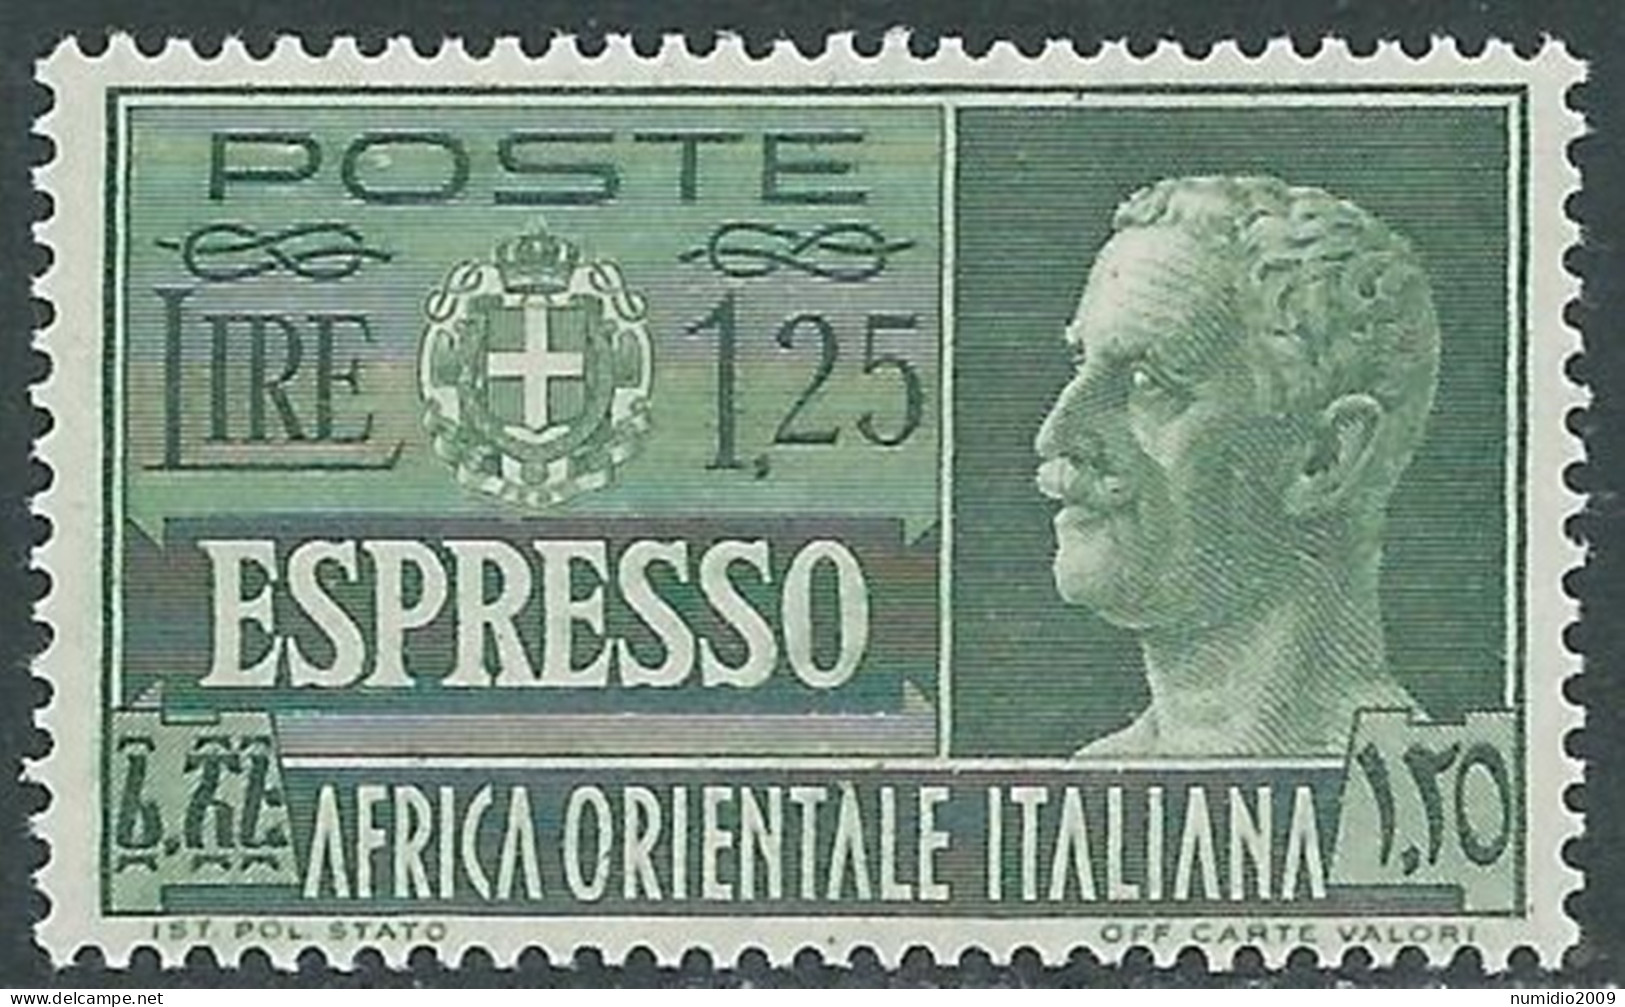 1938 AFRICA ORIENTALE ITALIANA ESPRESSO SOGGETTI VARI 1,25 LIRE MNH ** - I39-10 - Africa Oriental Italiana